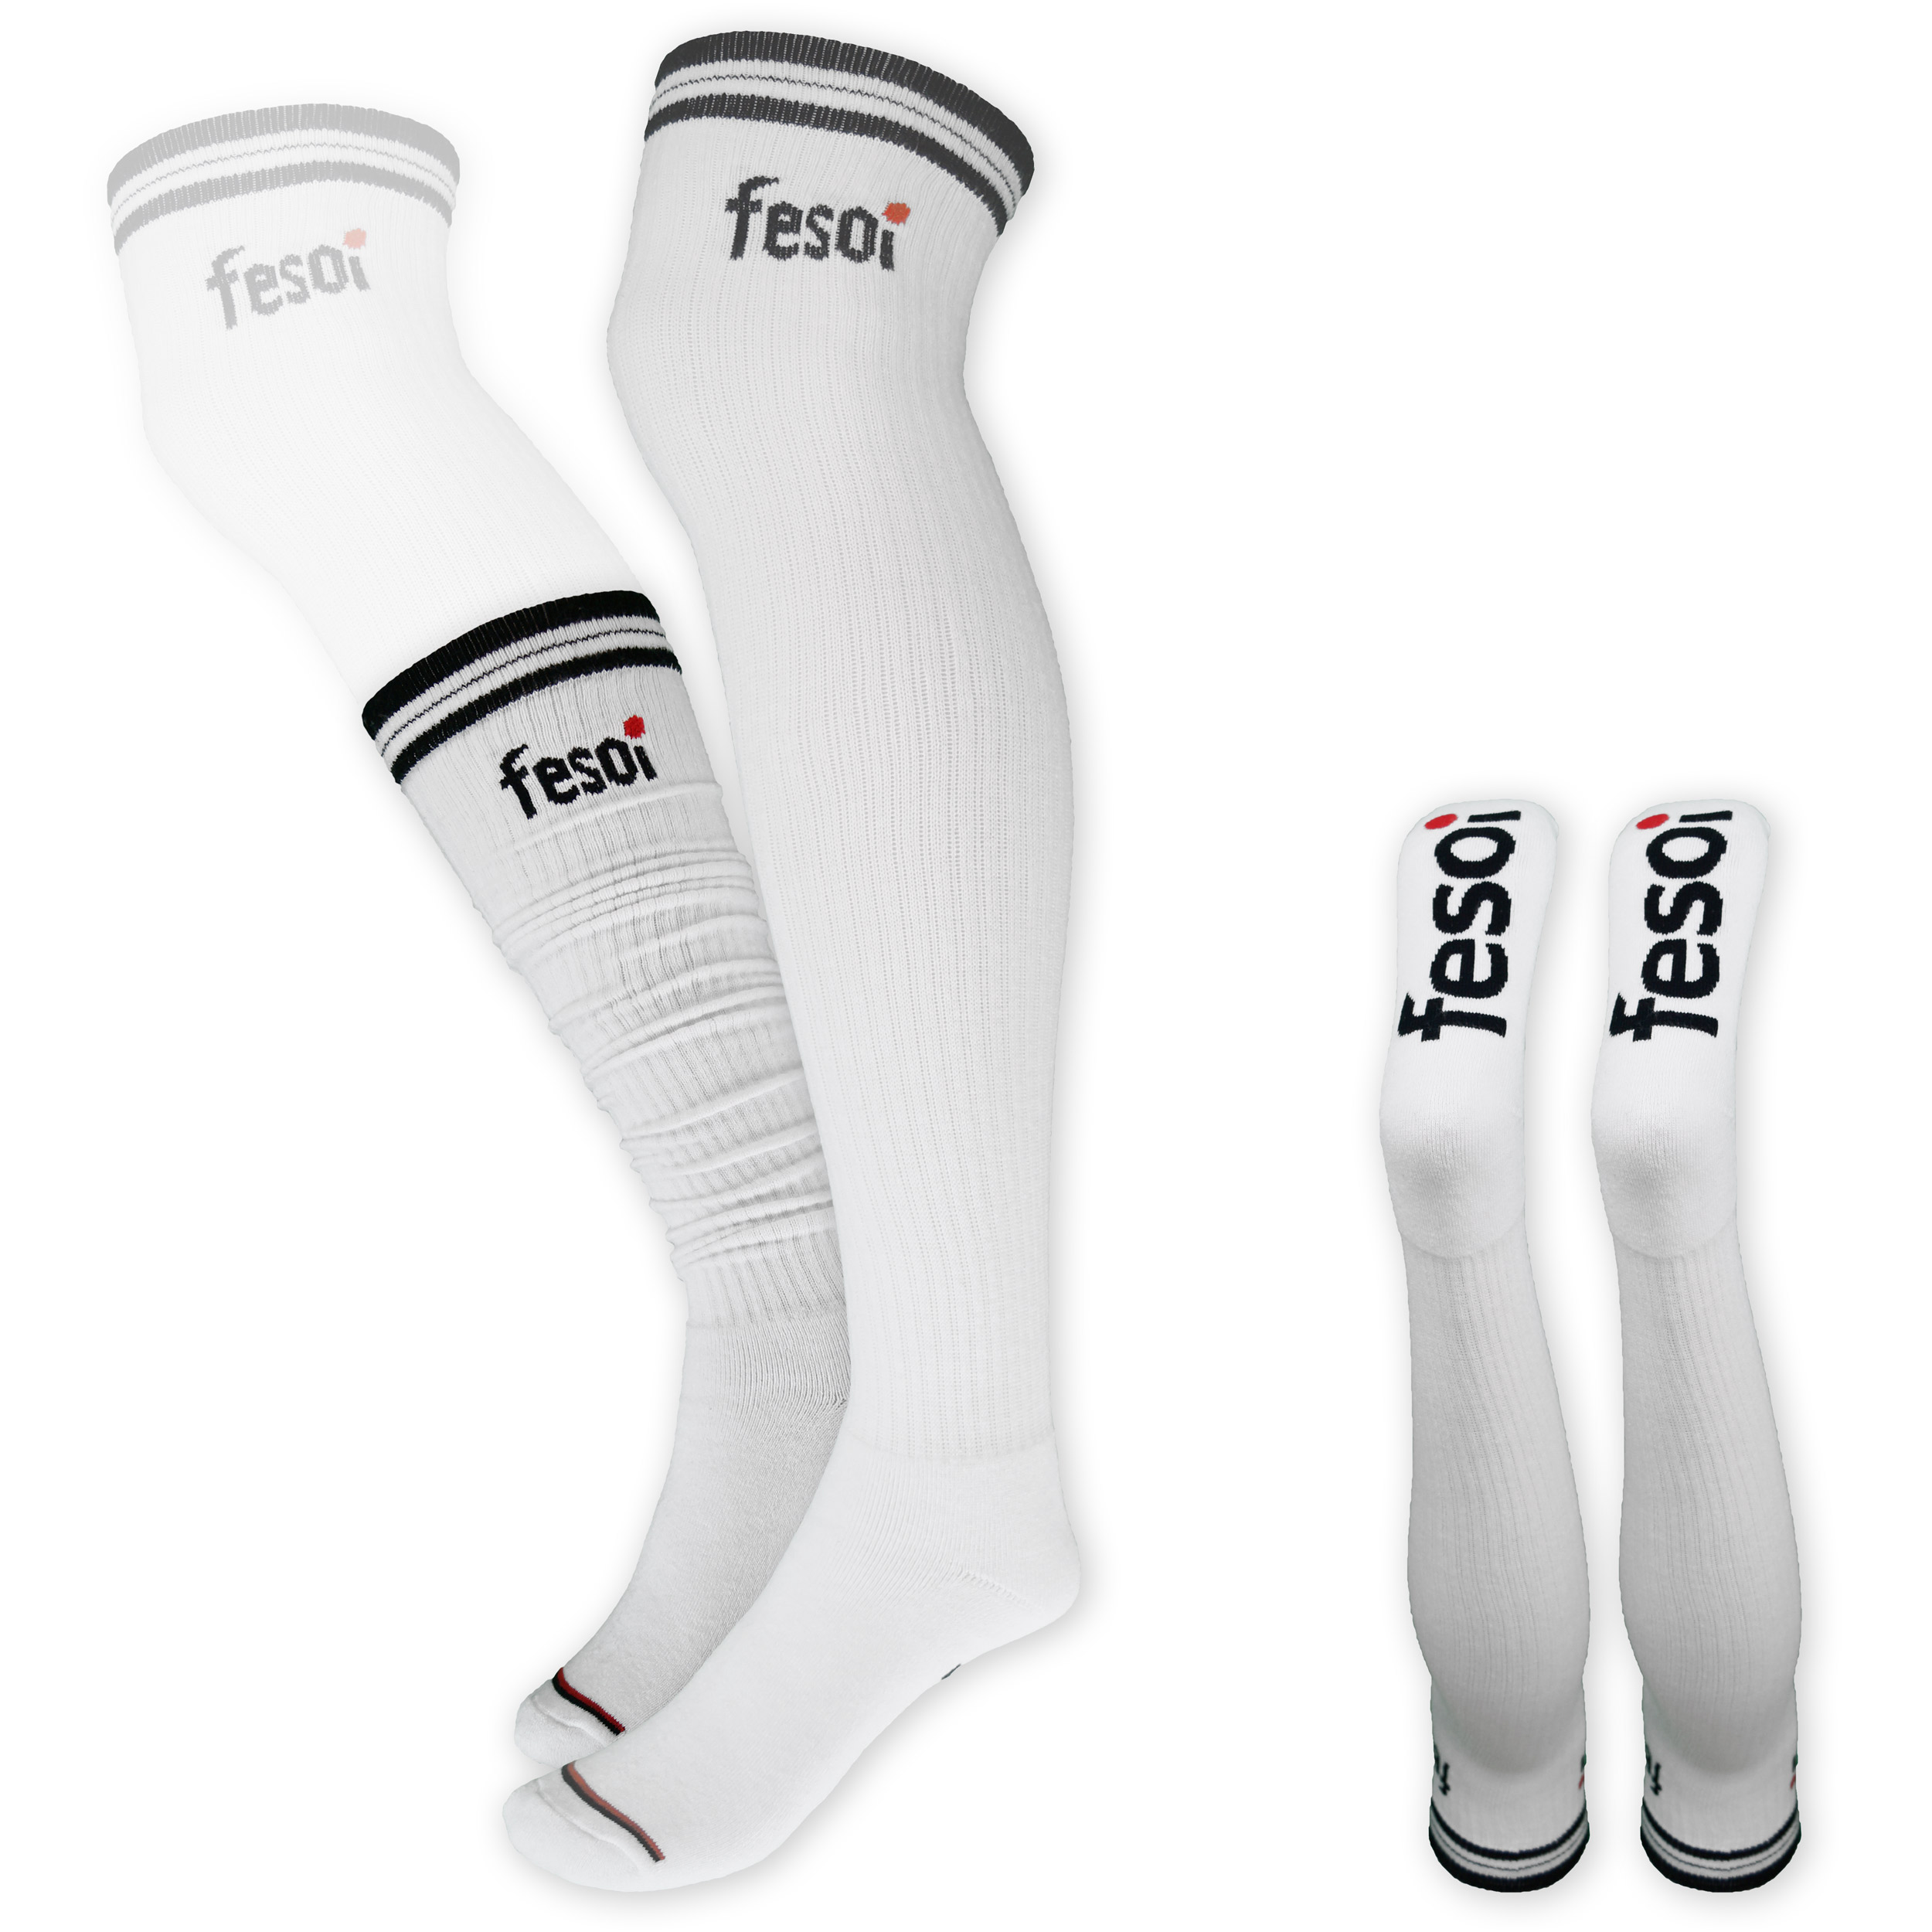 Overknee Socks - extra long Tube Socks